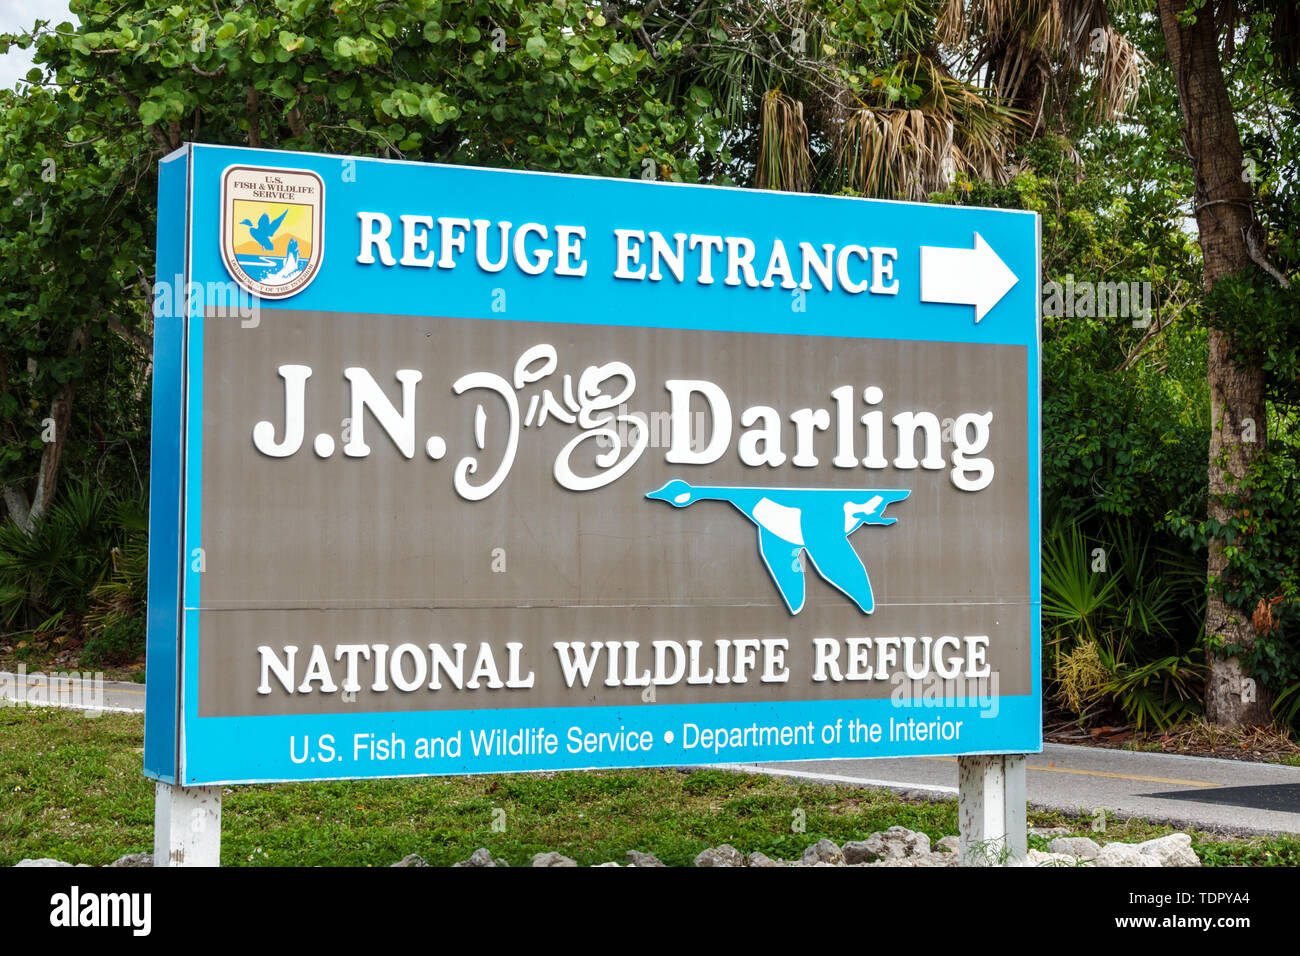 Sanibel Island Florida,J.N. Ding Darling National Wildlife Refuge,al conservation,entrance sign,FL190507051 Stock Photo